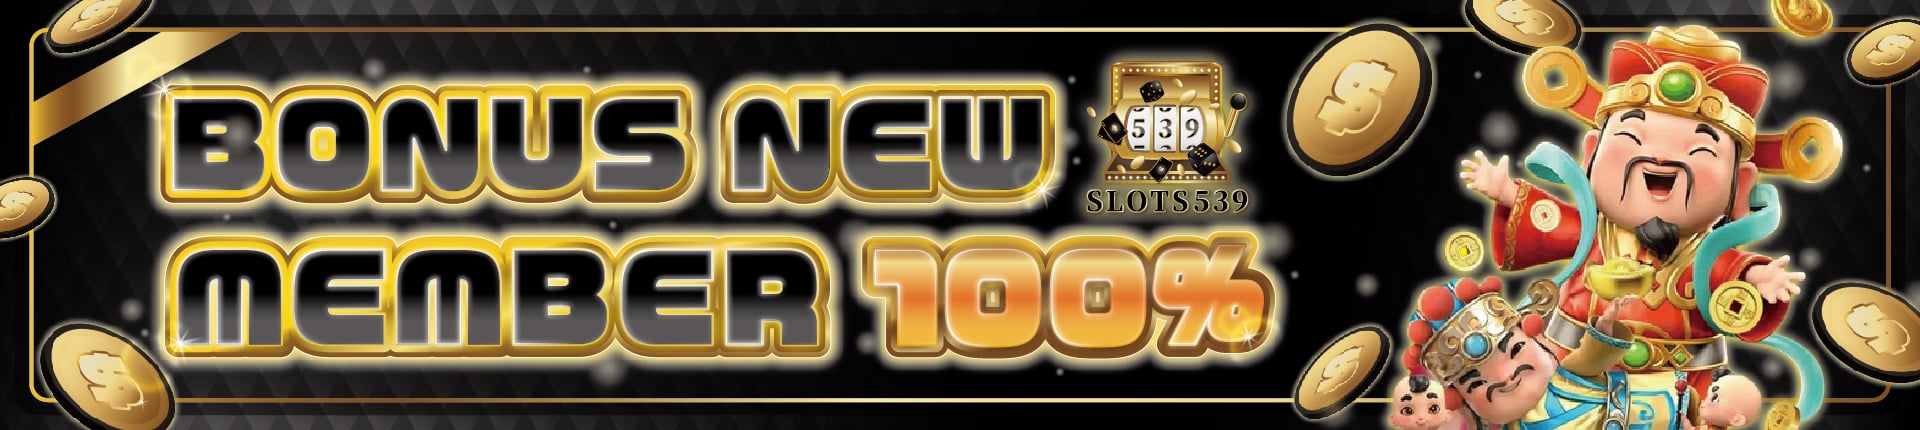 slots539 online casino promosi-bonus new member 100%